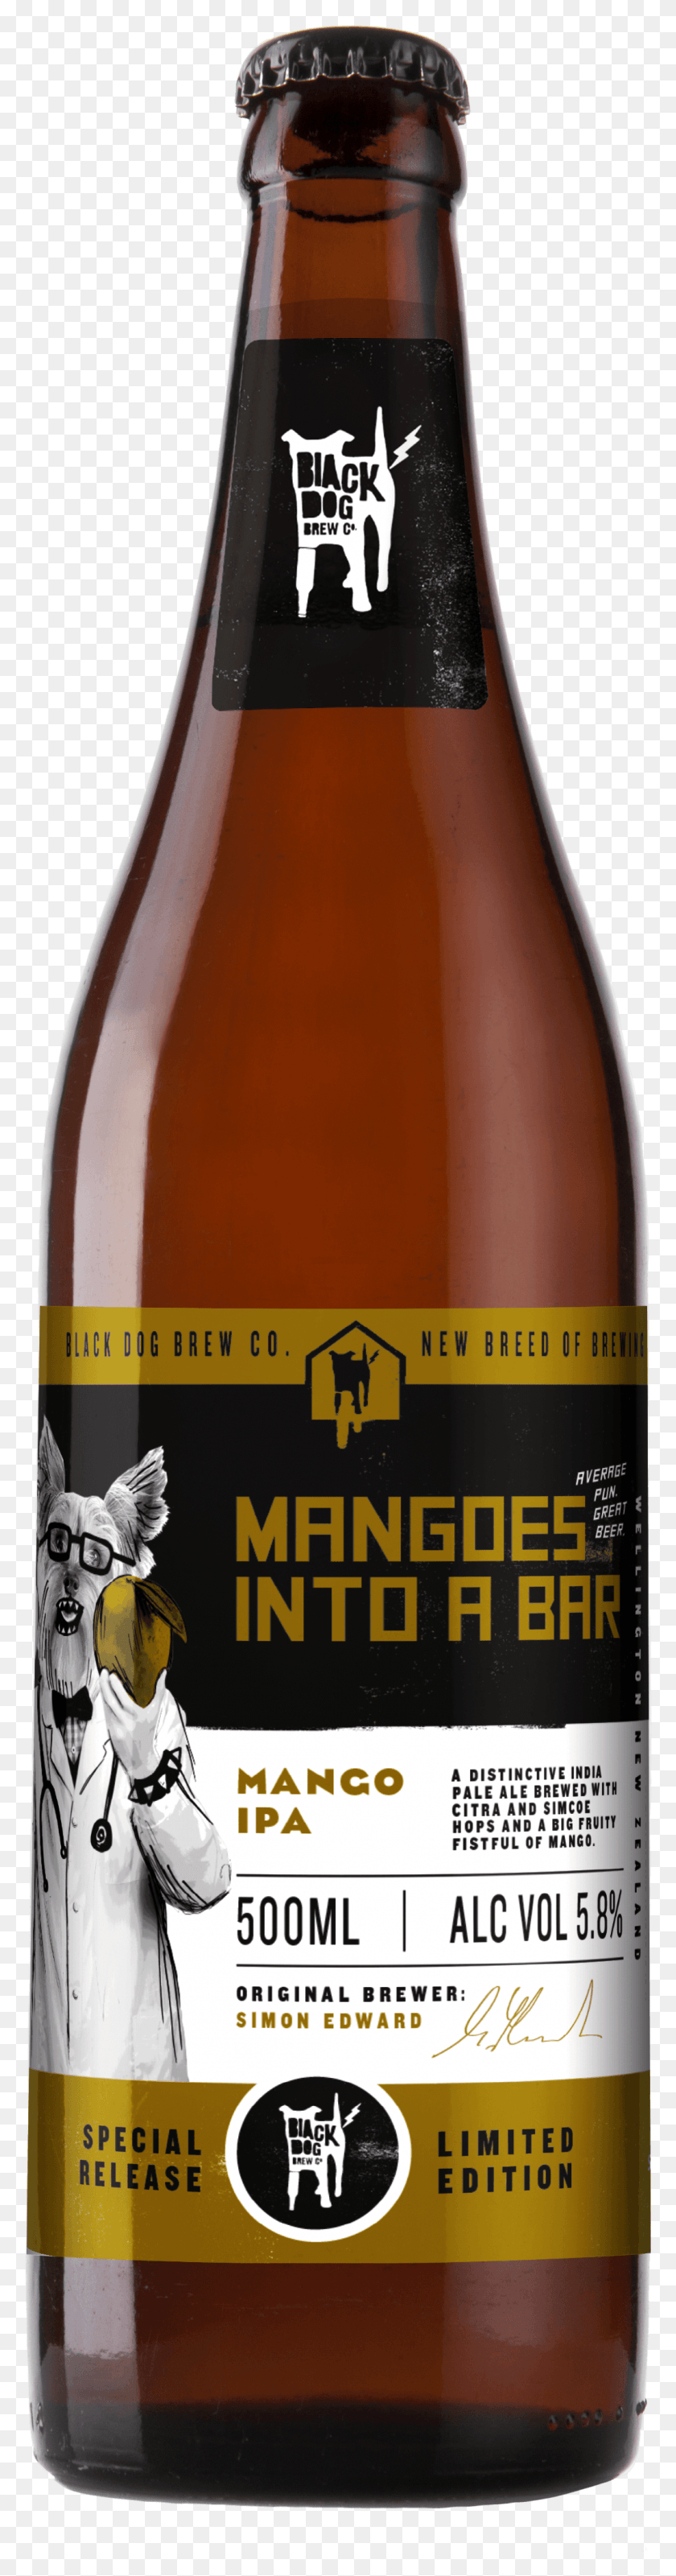 1070x4309 Descargar Png Mangoes En Un Bar Black Dog 500Ml Black Dog Mangos En Un Bar, Cerveza, Alcohol, Bebidas Hd Png